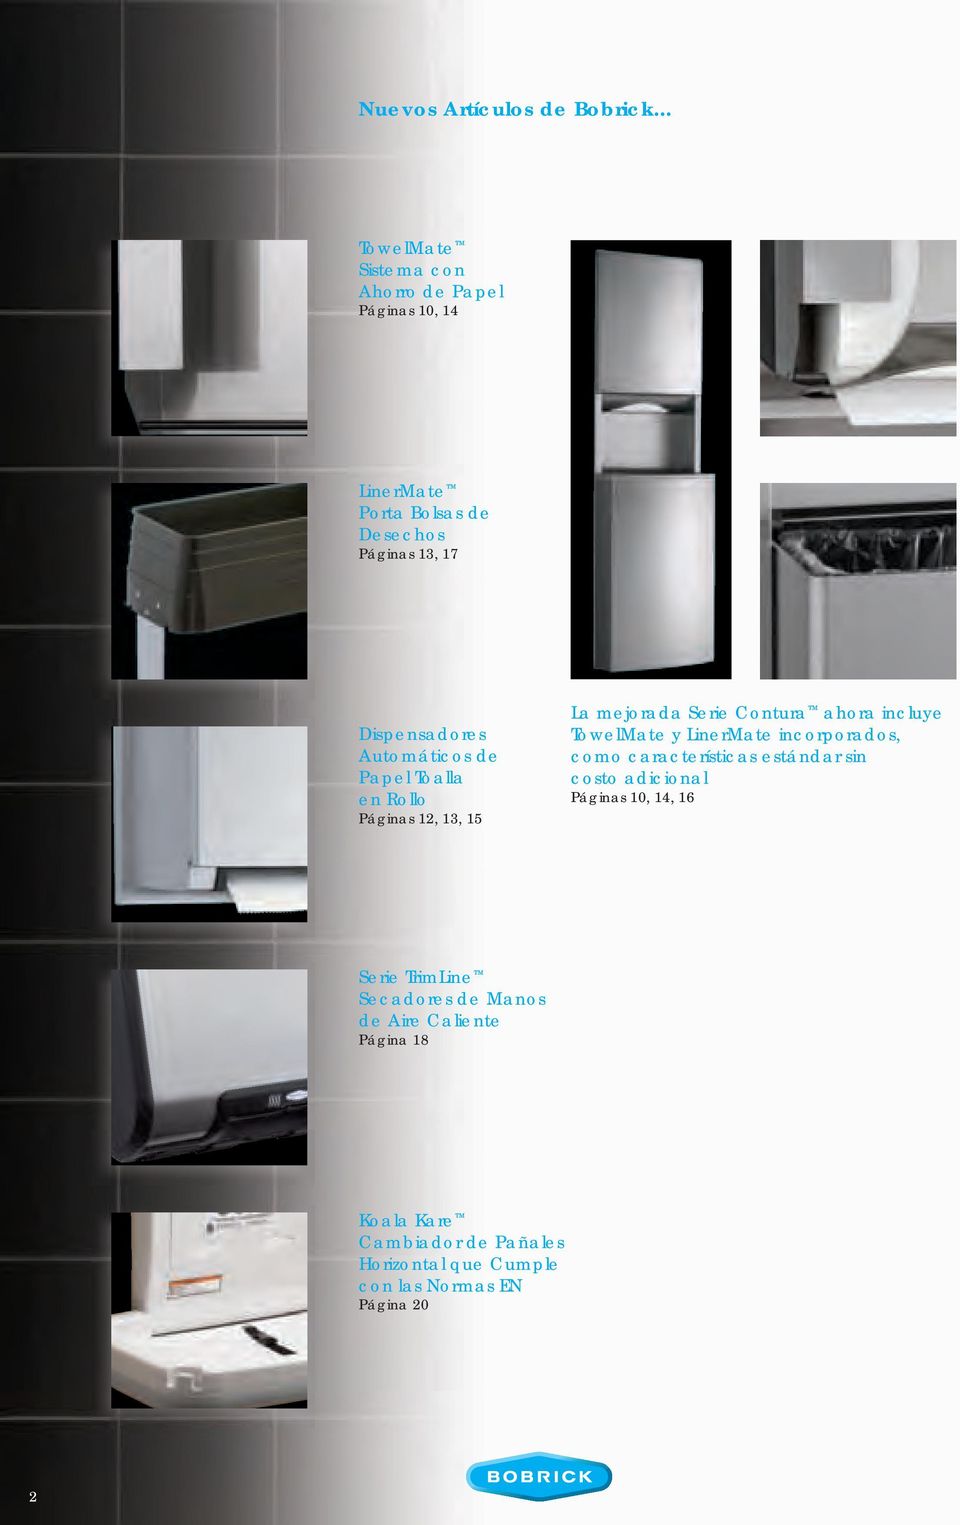 Automáticos de Papel Toalla en Rollo Páginas 12, 13, 15 La mejorada Serie Contura ahora incluye TowelMate y LinerMate